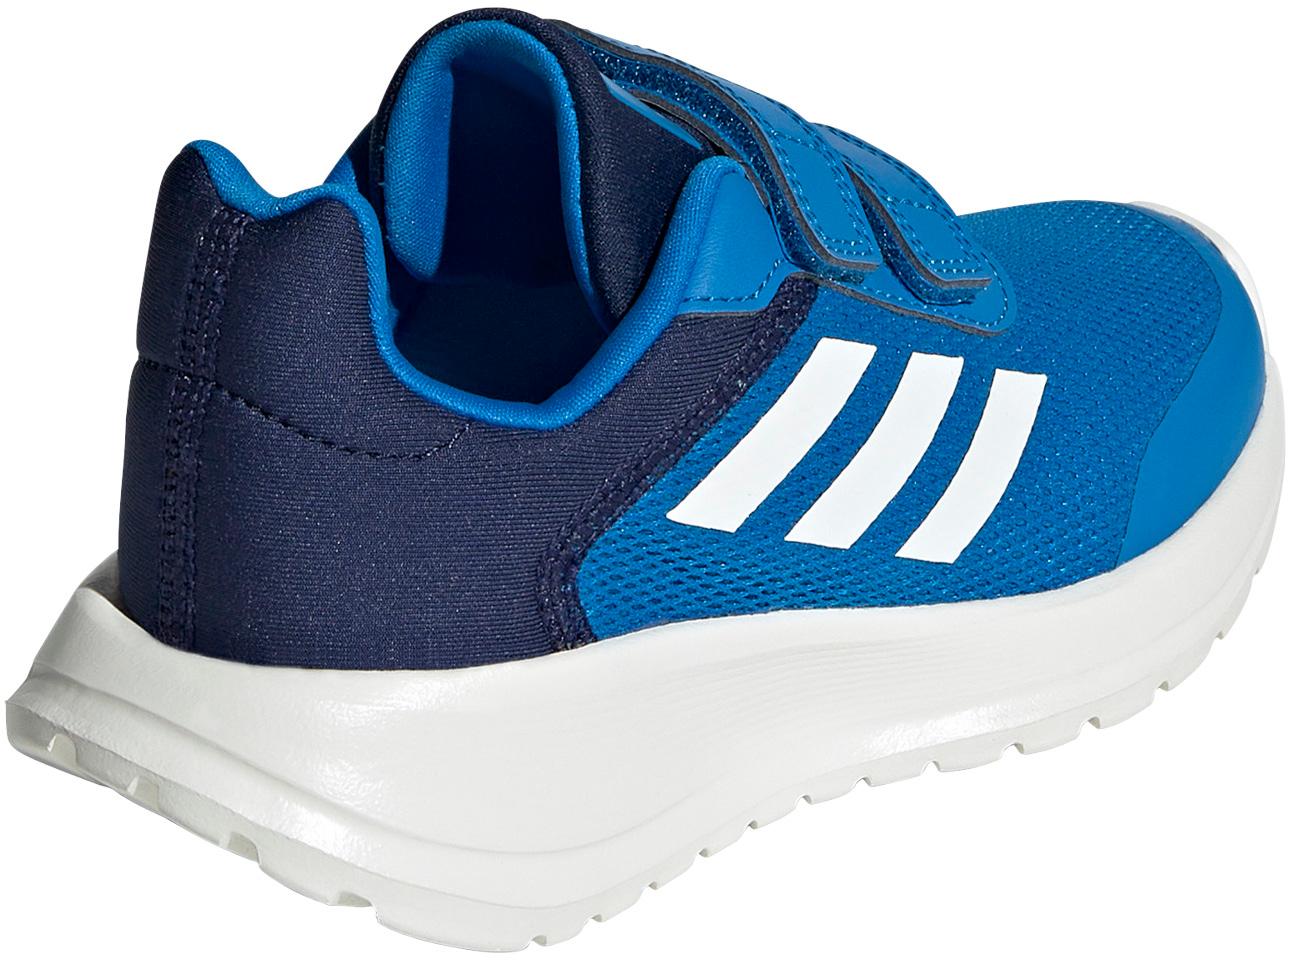 SportScheck RUN TENSAUR Online von white-dark blue Shop Adidas kaufen im blue Freizeitschuhe 2.0 rush-core Kinder